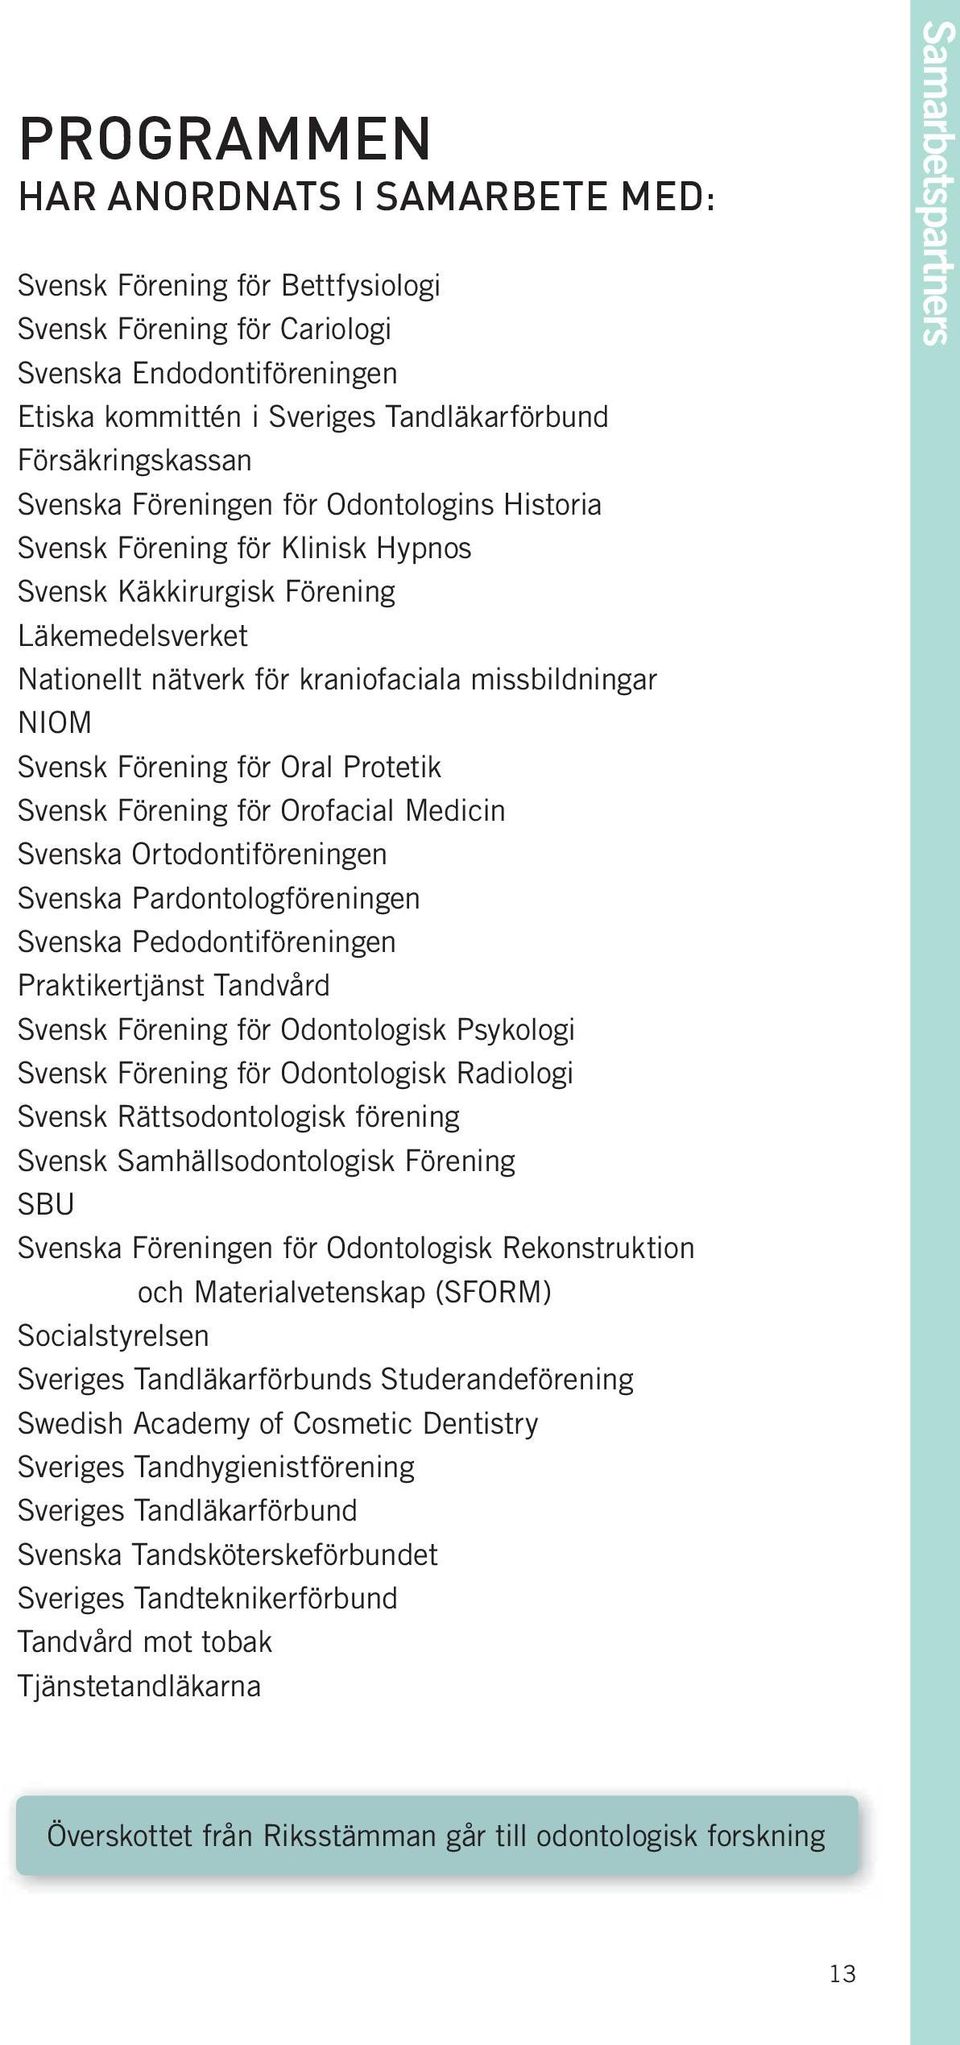 för Oral Protetik Svensk Förening för Orofacial Medicin Svenska Ortodontiföreningen Svenska Pardontologföreningen Svenska Pedodontiföreningen Praktikertjänst Tandvård Svensk Förening för Odontologisk